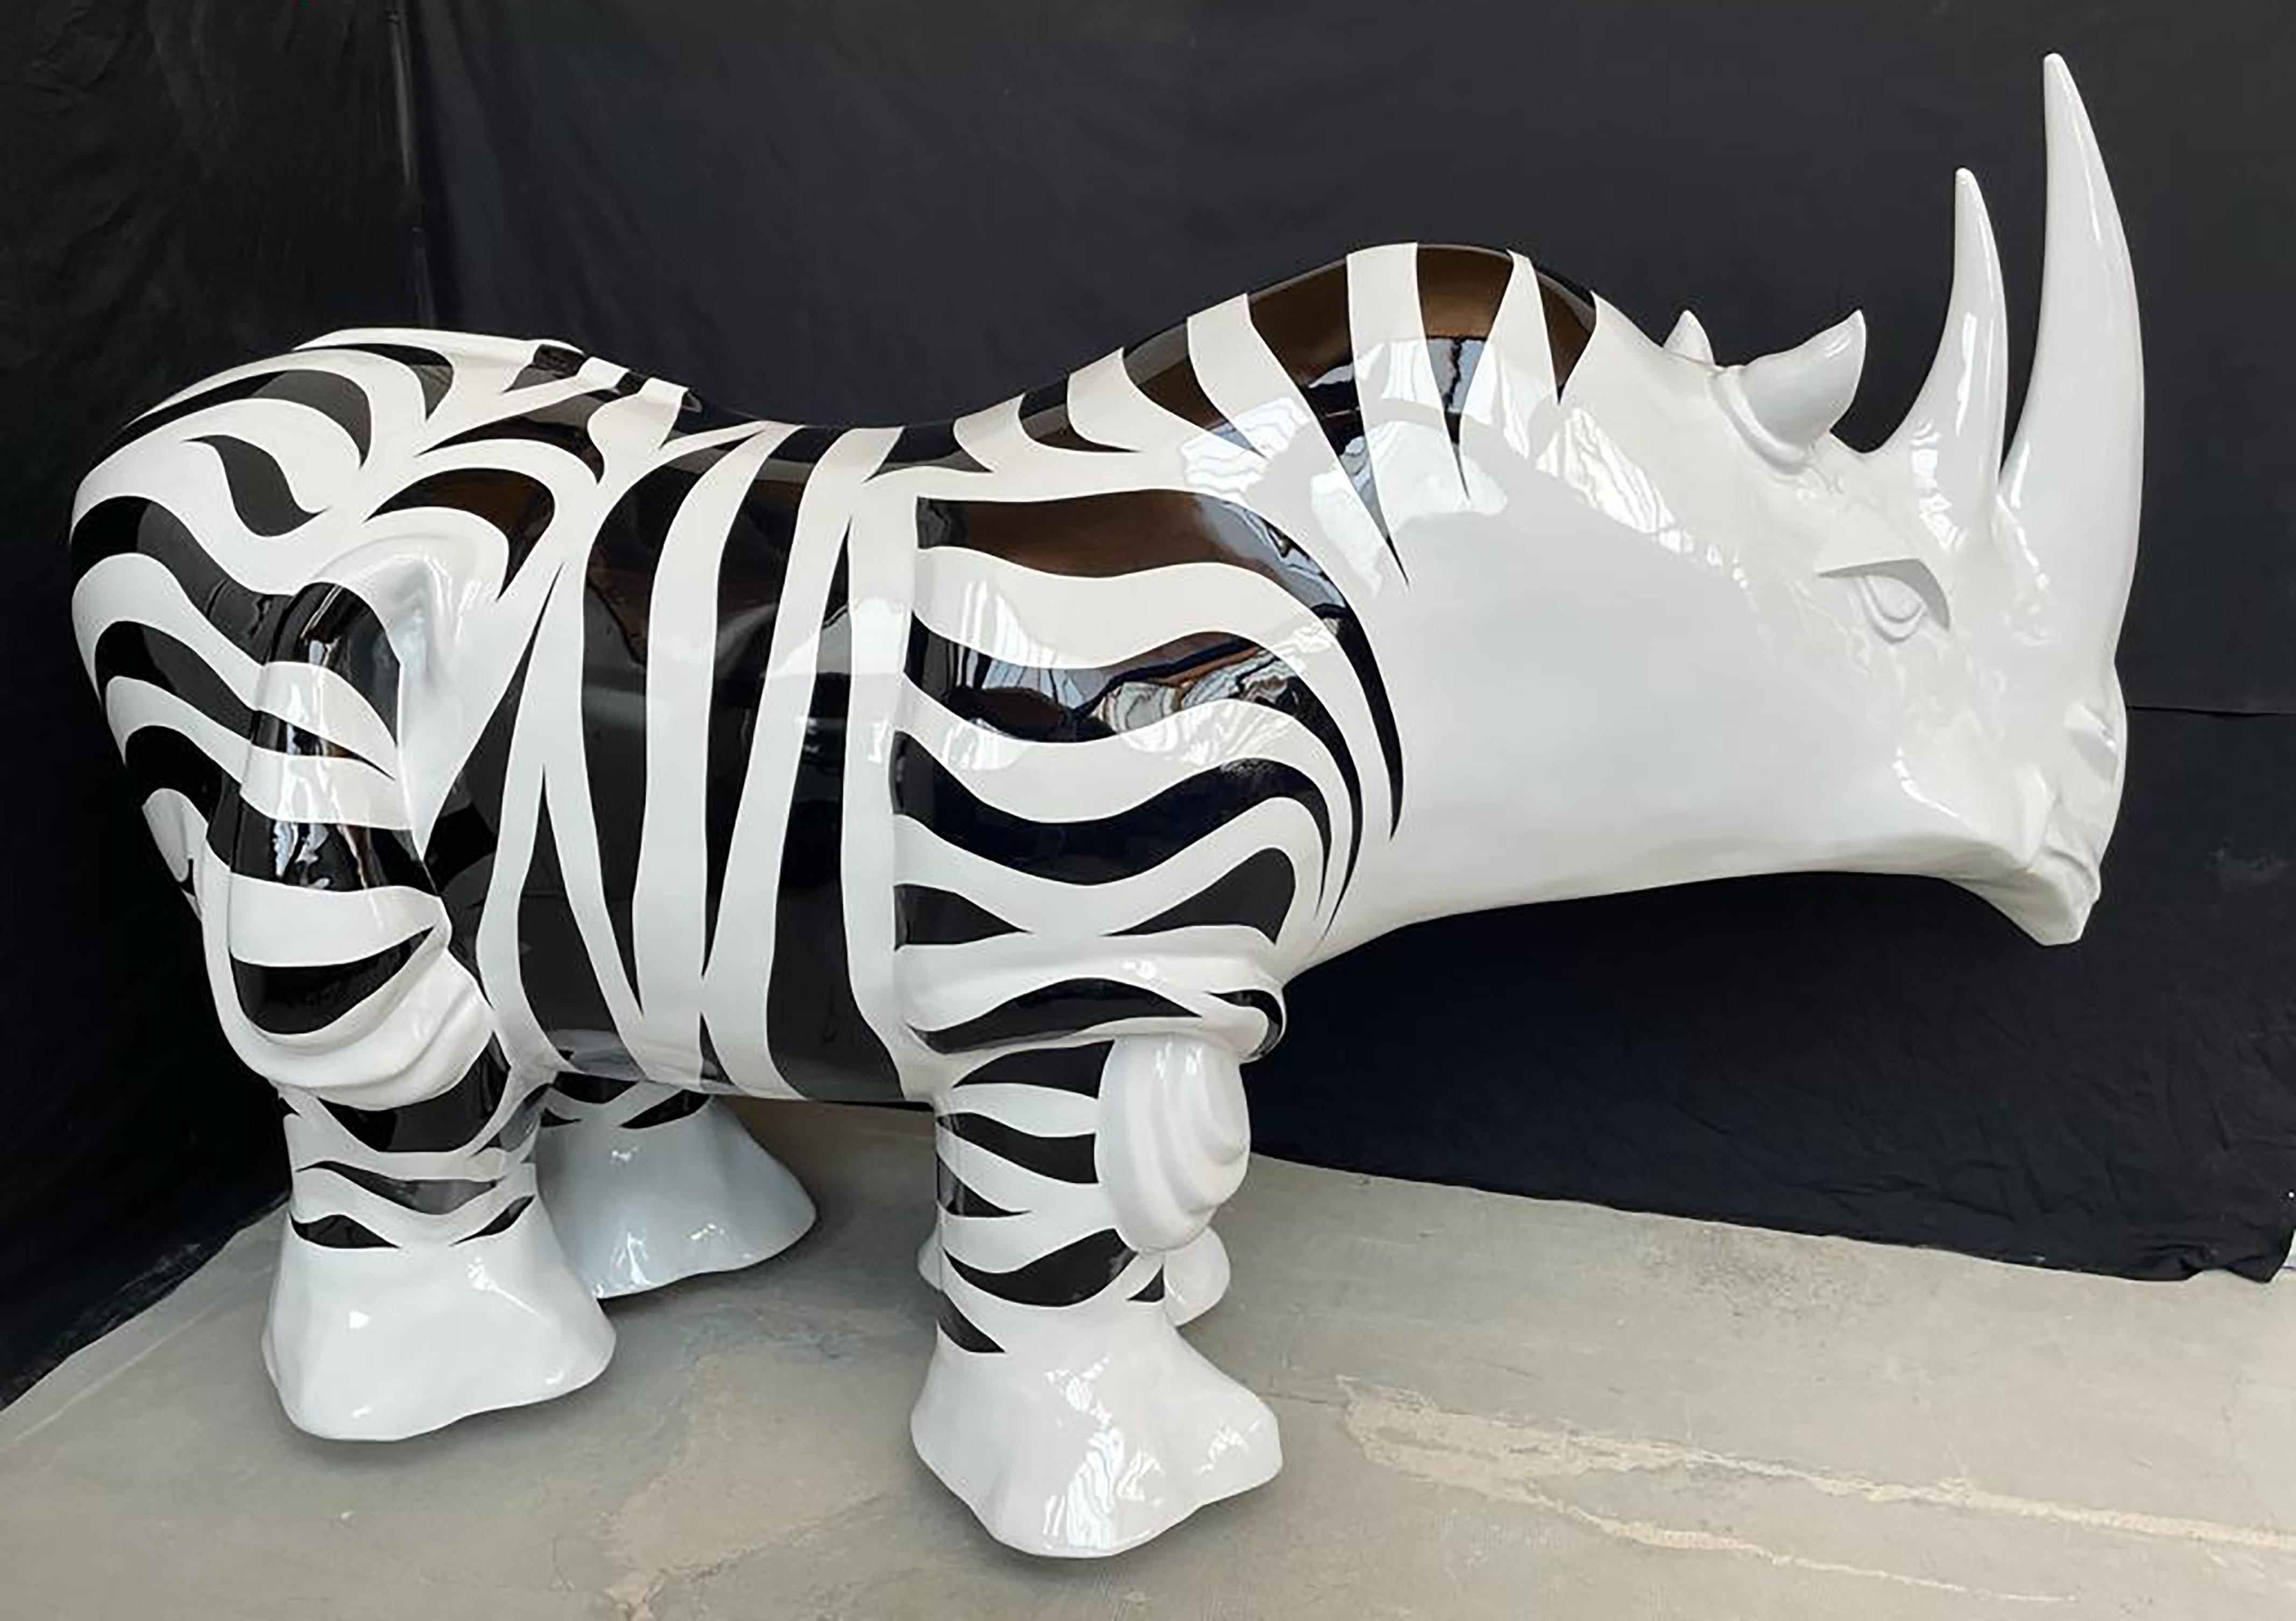 Rhinozebros ist eine Harzskulptur von Patrick Schumacher, einem französischen zeitgenössischen Künstler. Diese Skulptur stellt ein Nashorn dar, das mit einem Zebrafell geschmückt ist. 
